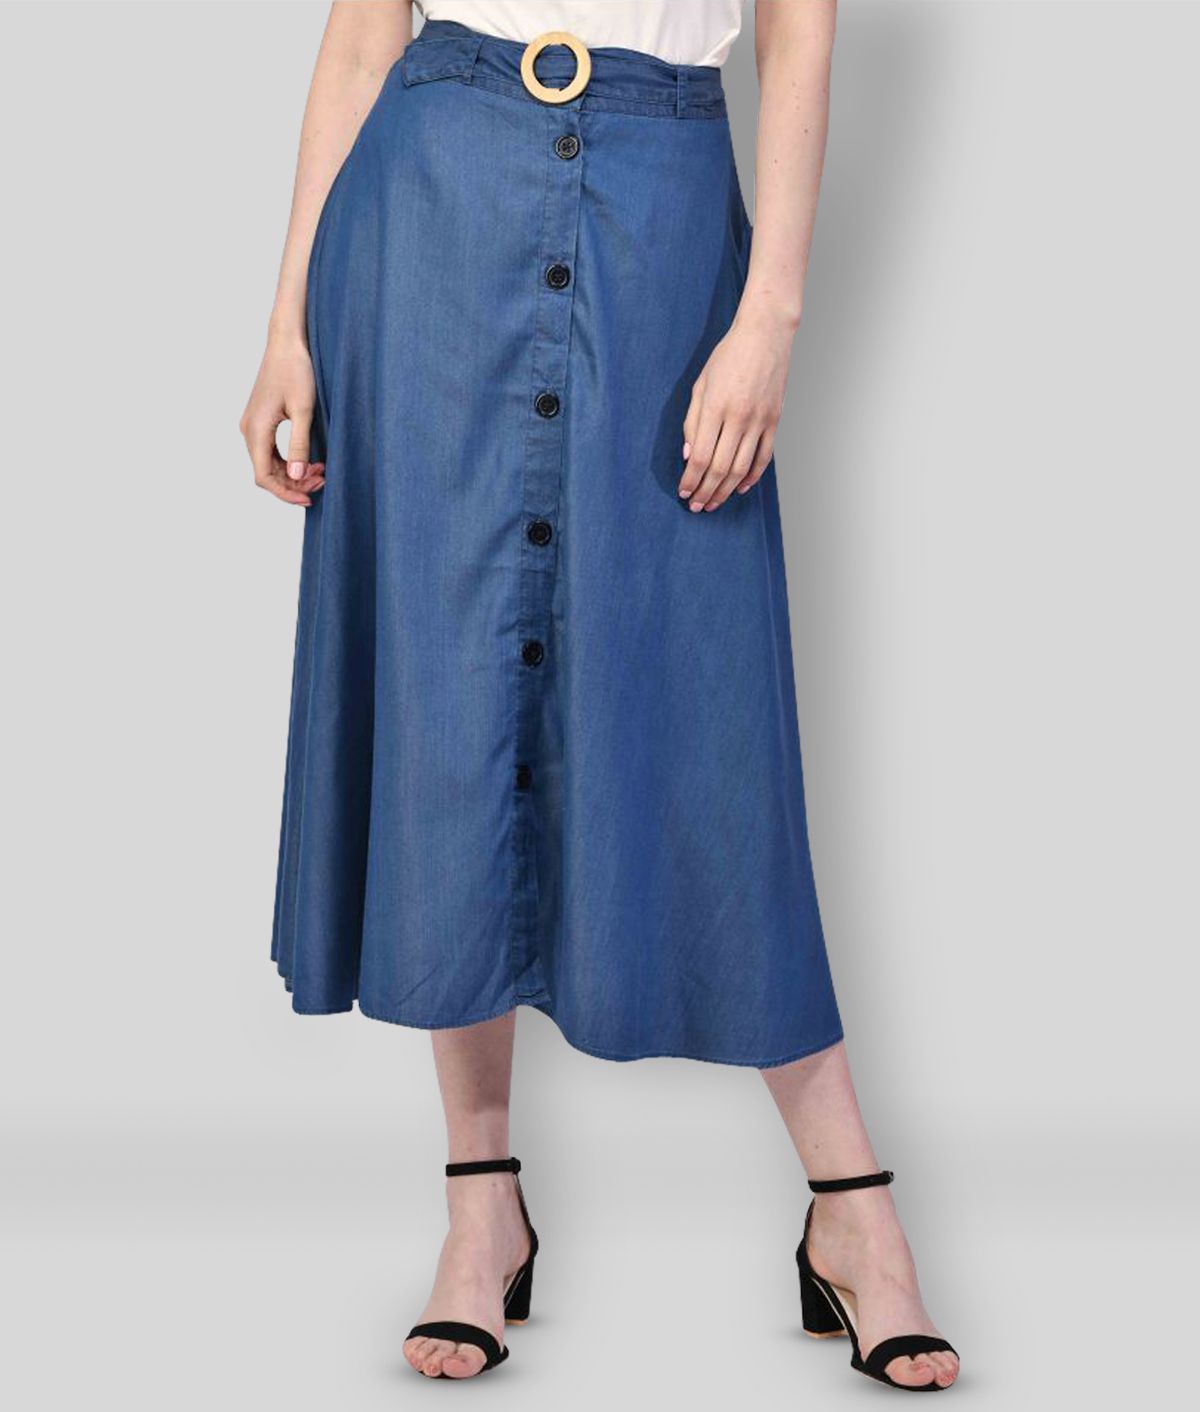 NUEVOSDAMAS - Blue Denim Women's A-Line Skirt ( Pack of 1 )